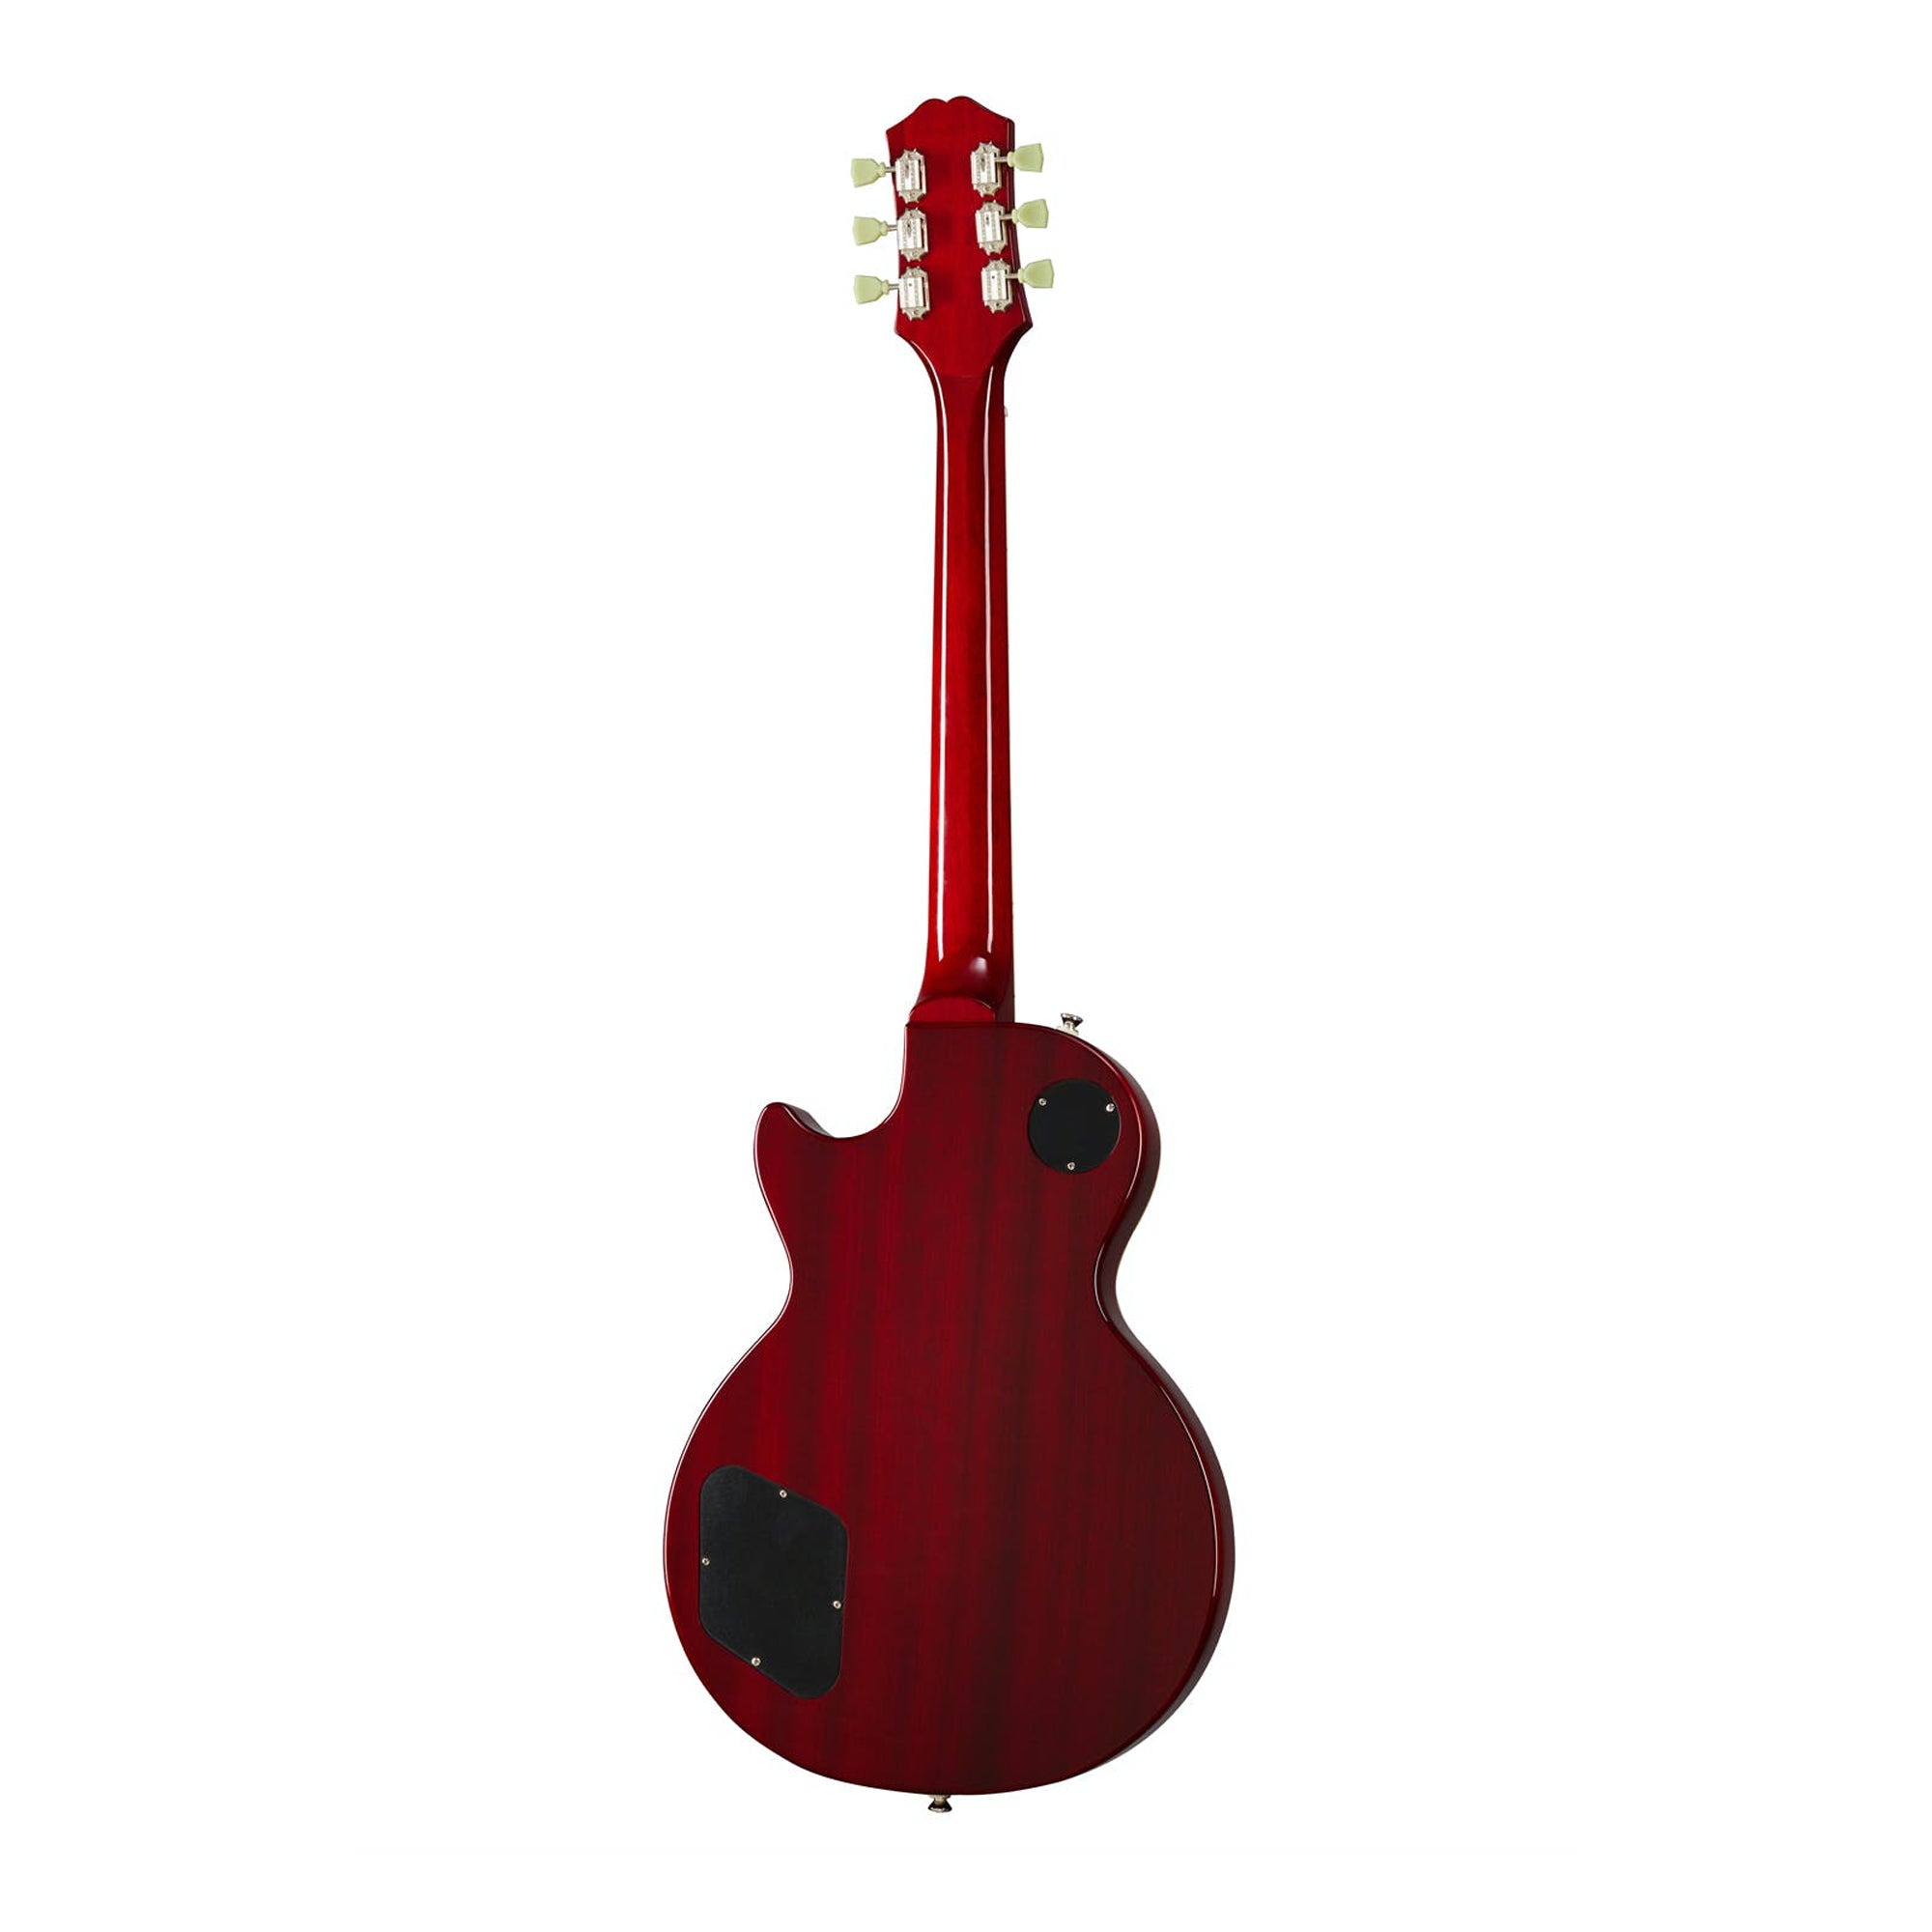 Epiphone EILS5HSNH1 Les Paul Standard '50s Heritage Cherry Sunburst Electric Guitar